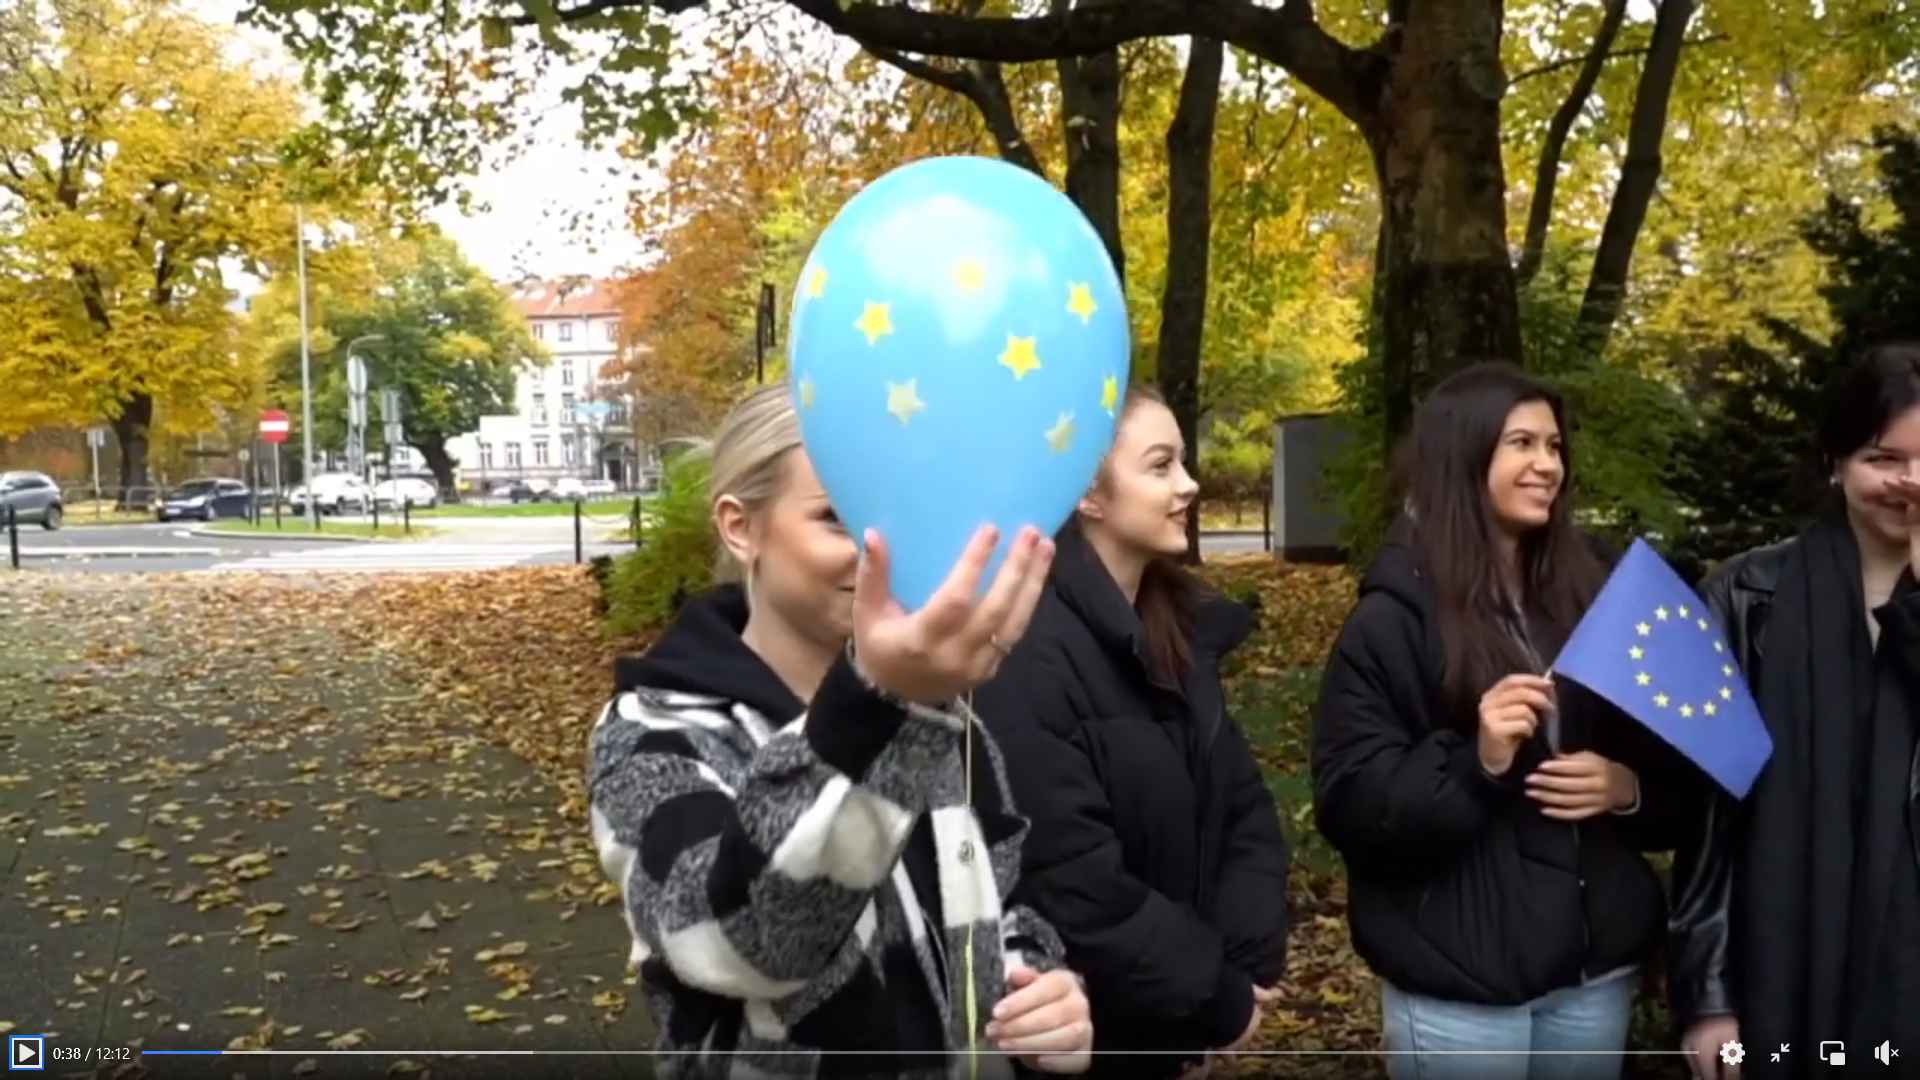 Na zdjęciu wdzimy kilka osób w parku, w tle przejście dla pieszych chodnik i liście. Jedna z dziewczyn na głównym planie trzyma balon symbolizujący Unię Europejską (niebieski z żółtymi gwiazdkami), a druga dziewczyna trzyma flagę UE